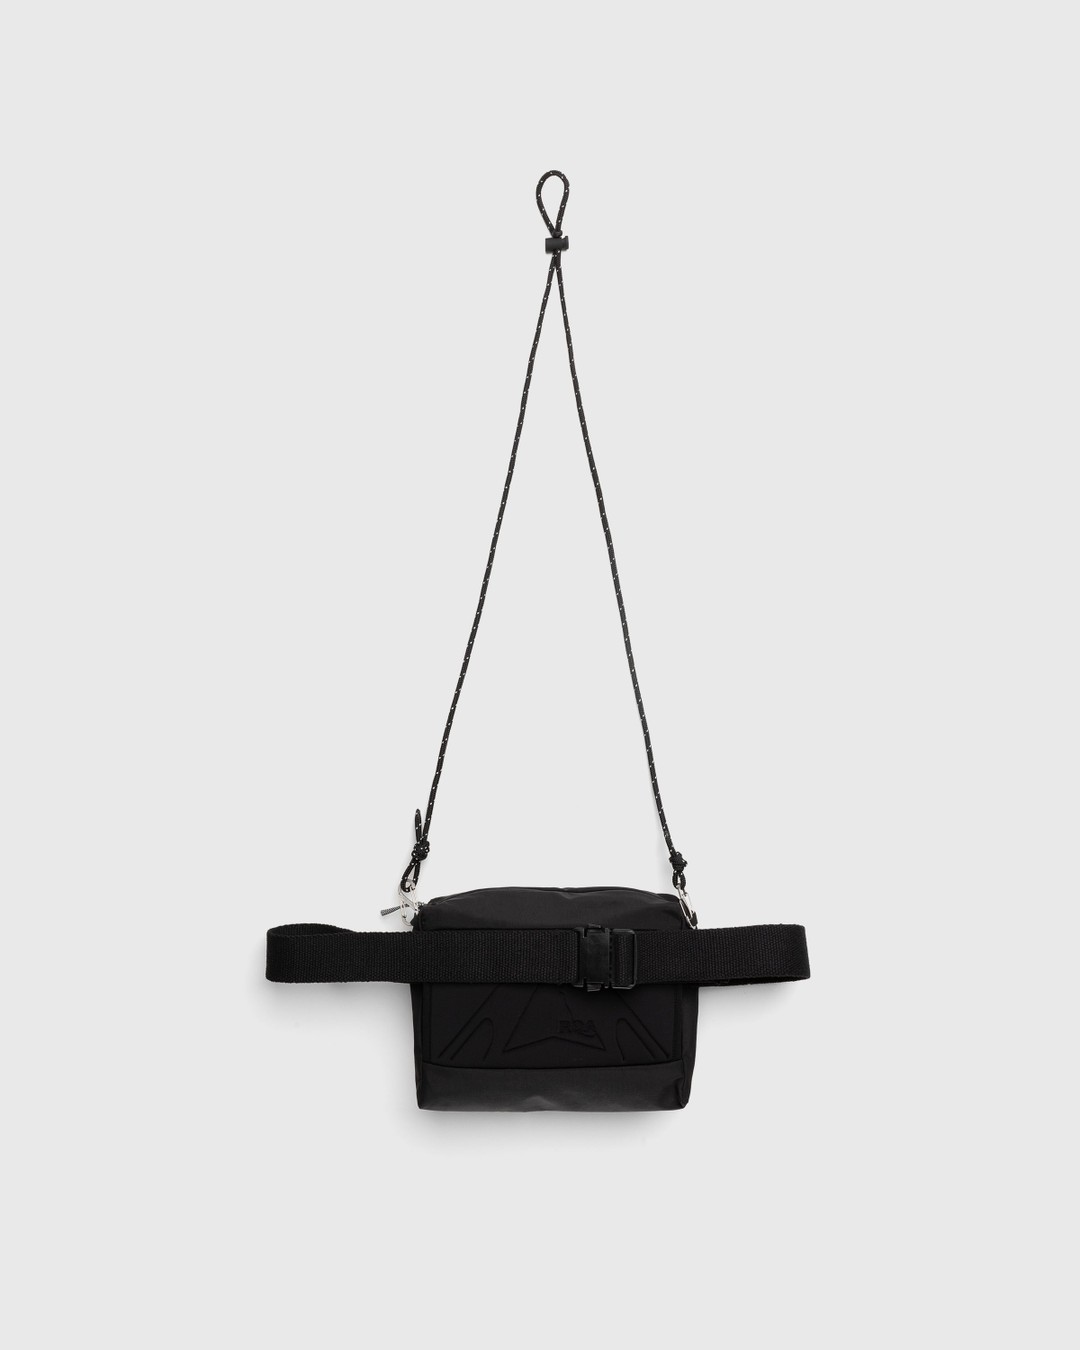 Waterproof Crossbody Bag Black - Waistbags - Black - Image 2